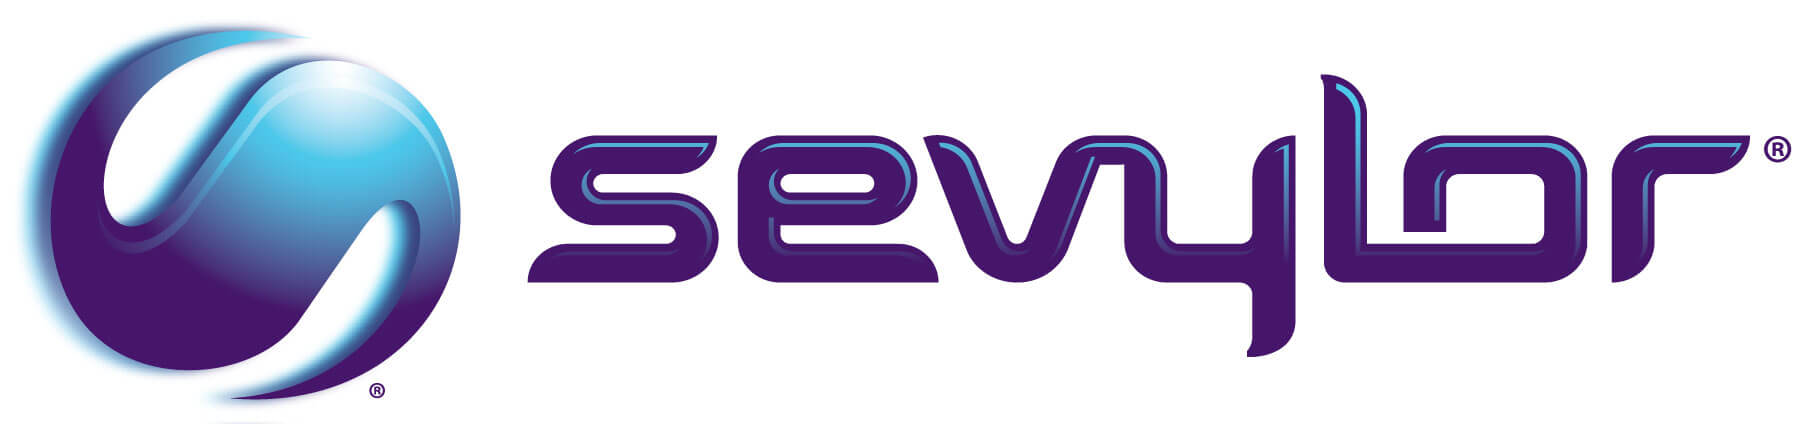 Sevylor logo